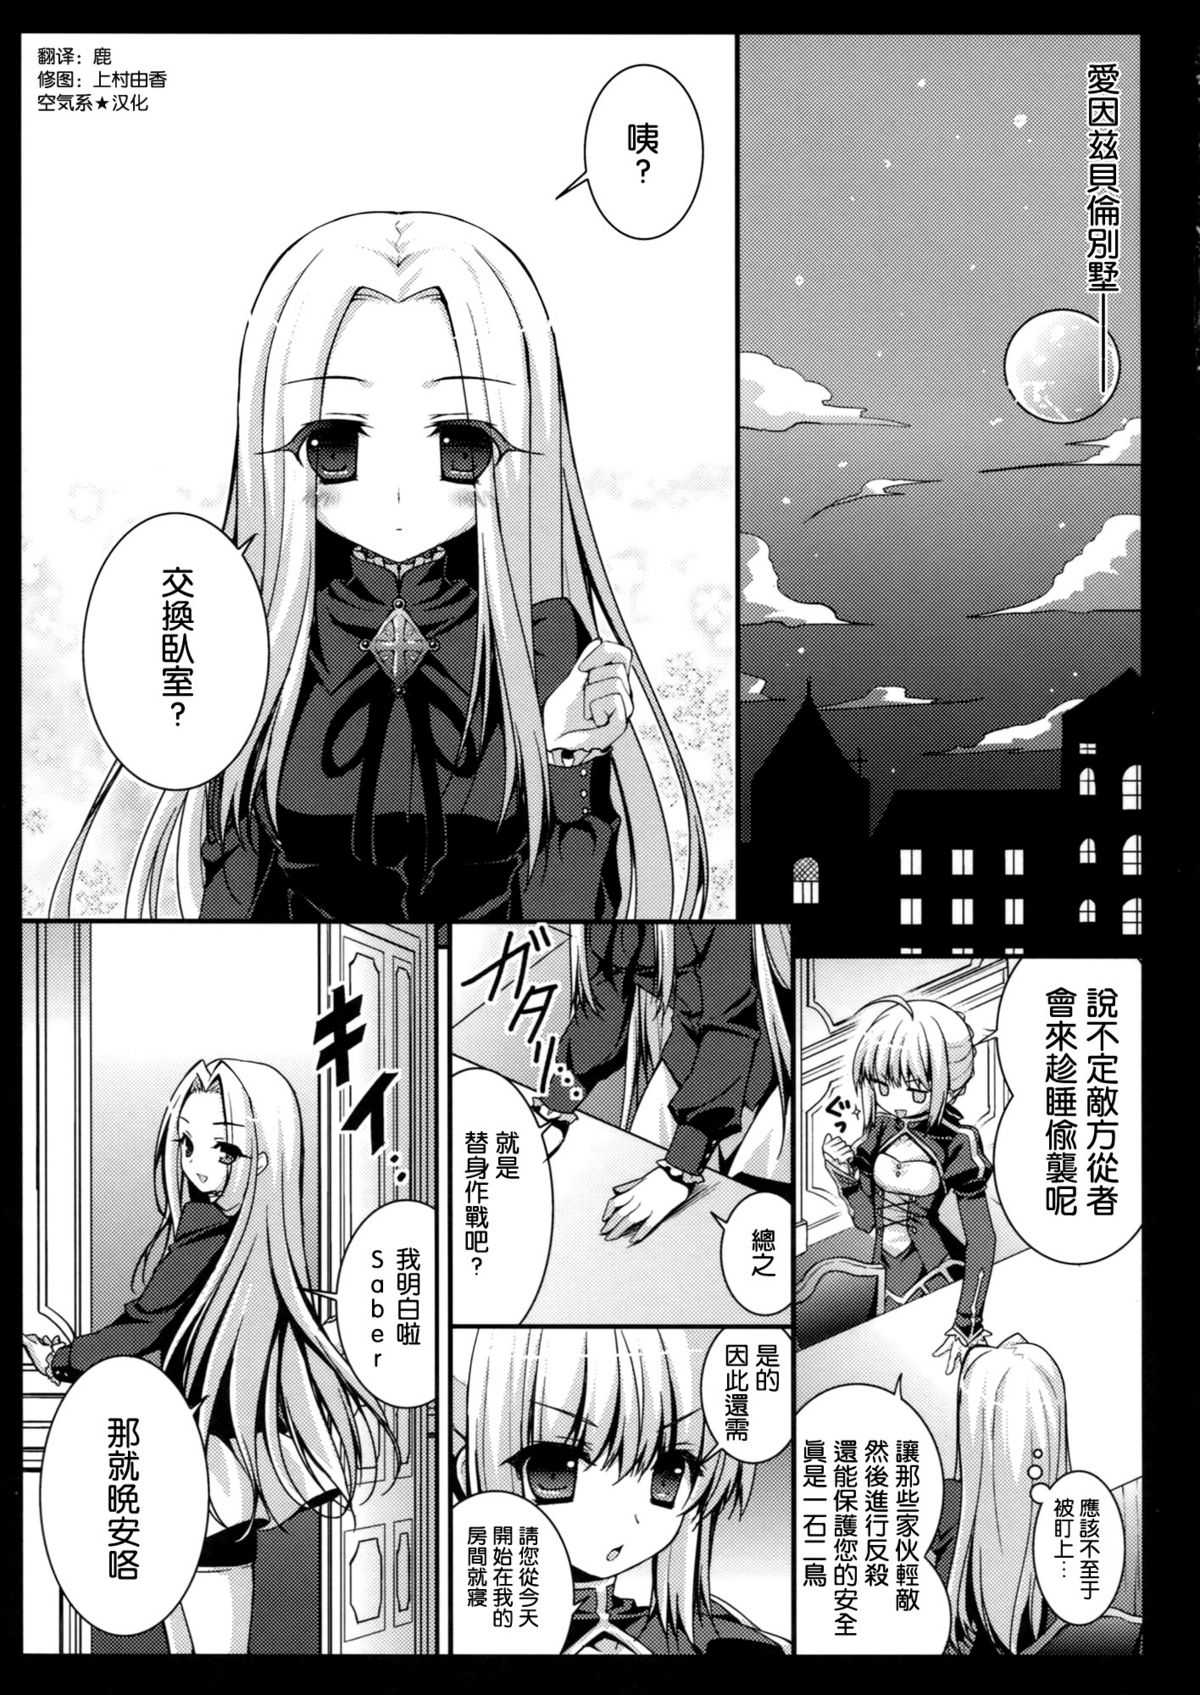 (Comic Treasure 19) [Kinokonomi (konomi)] Saber san no Migawari Sakusen (Fate/Zero) [Chinese] (こみトレ19) [きのこのみ (konomi)] セイバーさんの身代わり作戦 (Fate／Zero) [空気系★汉化]